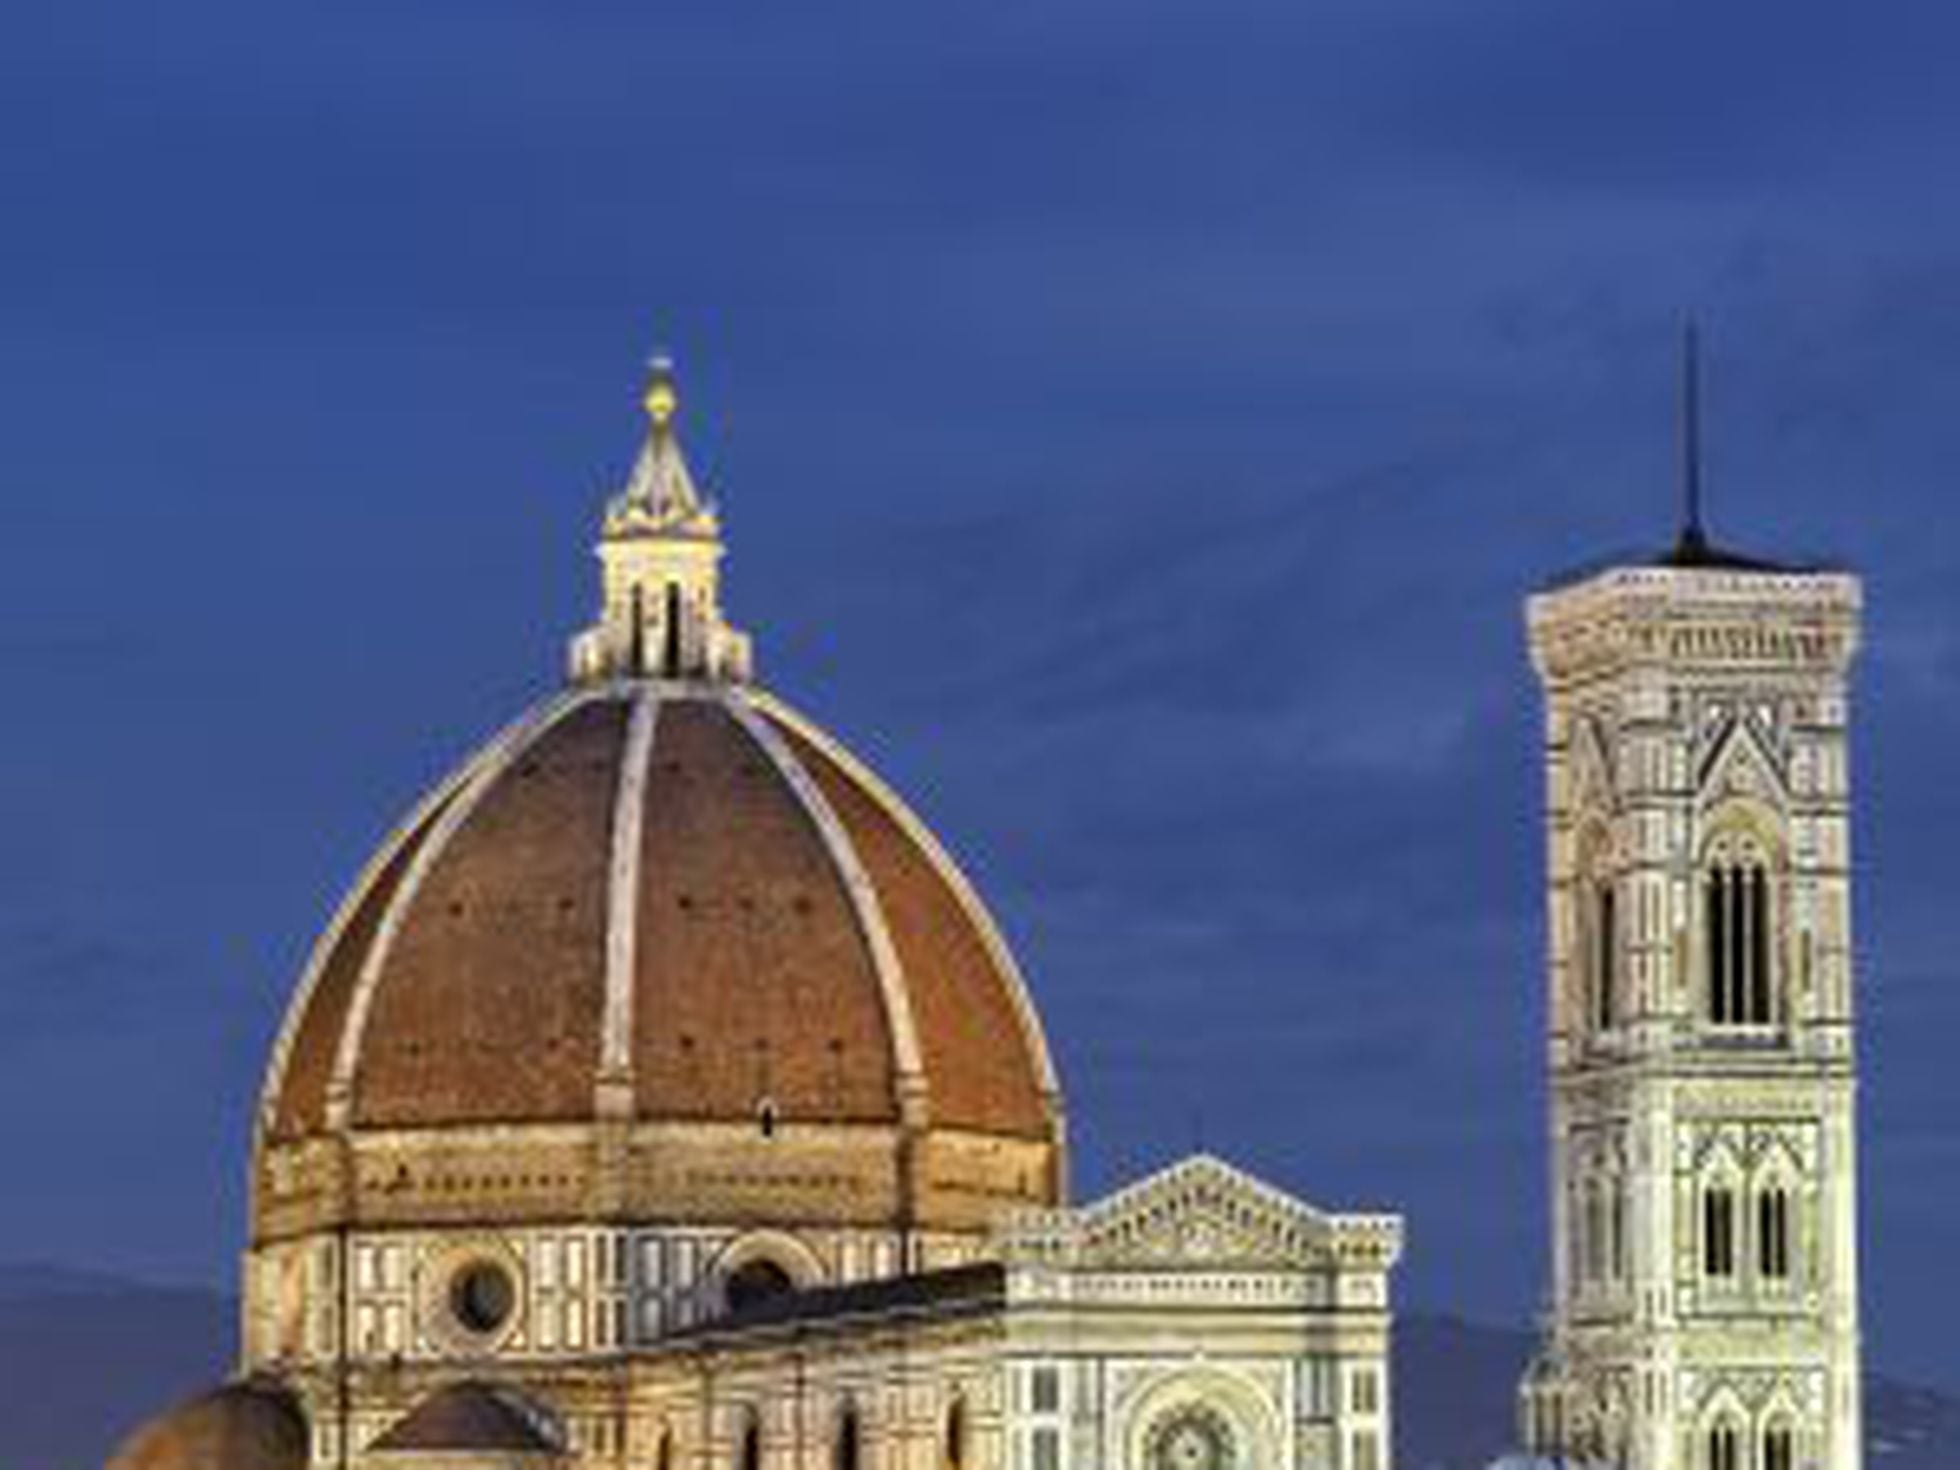 Hallado el 'boceto' de Brunelleschi | Cultura | EL PAÍS